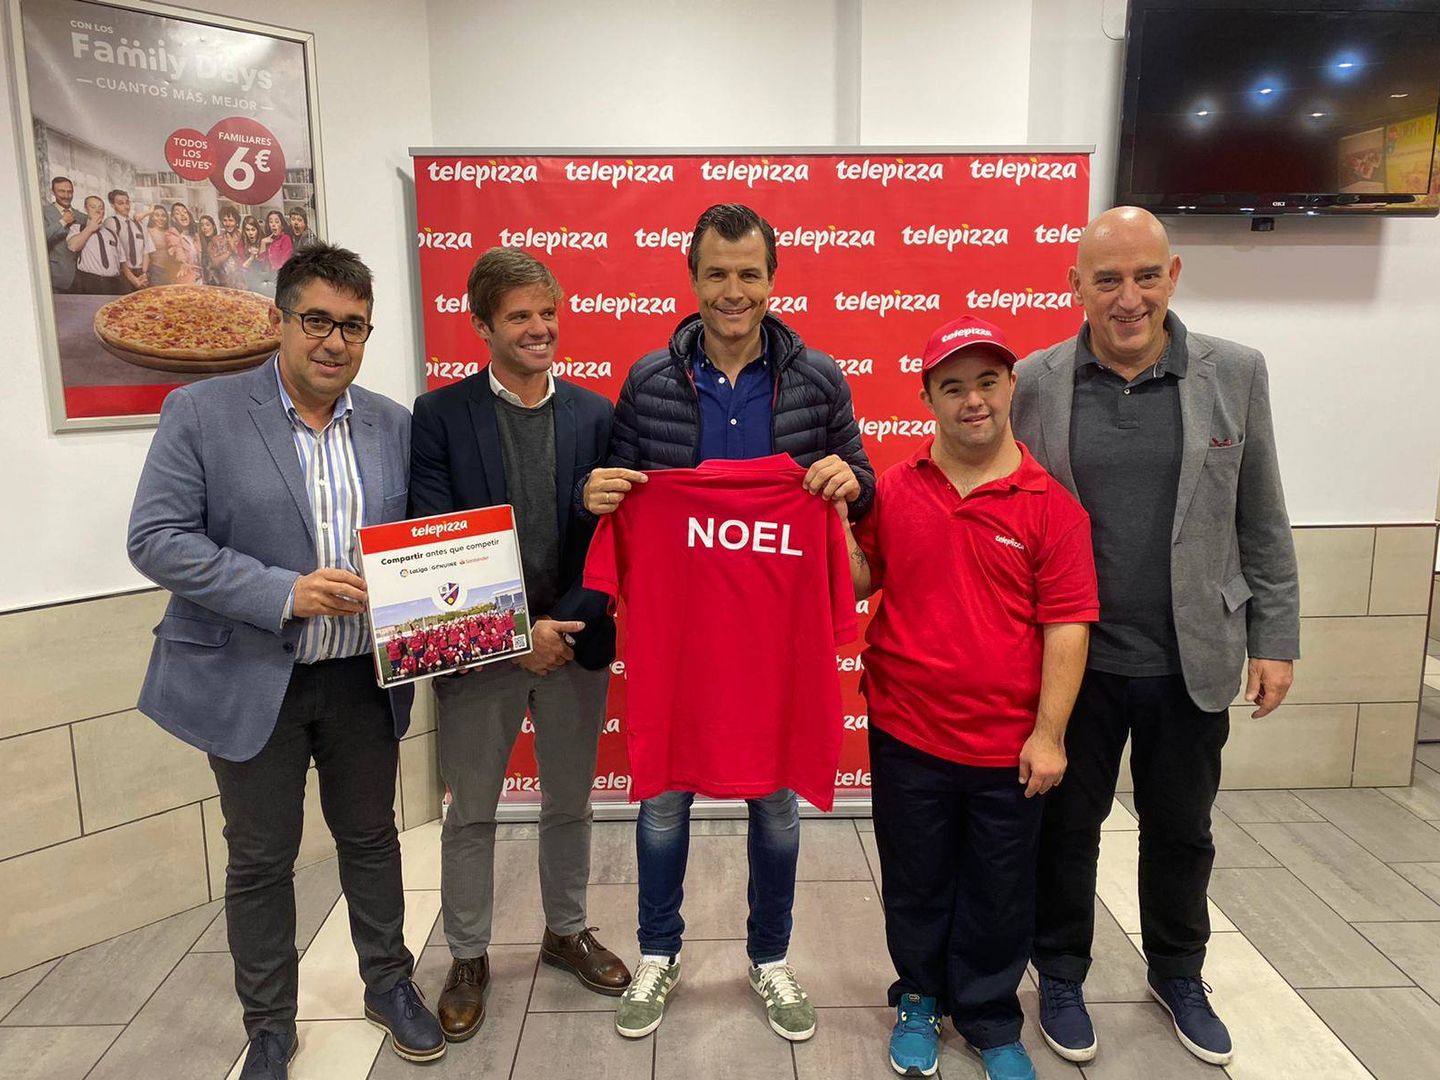 Noel, de la SD Huesca, fue la primera incorporación del programa.